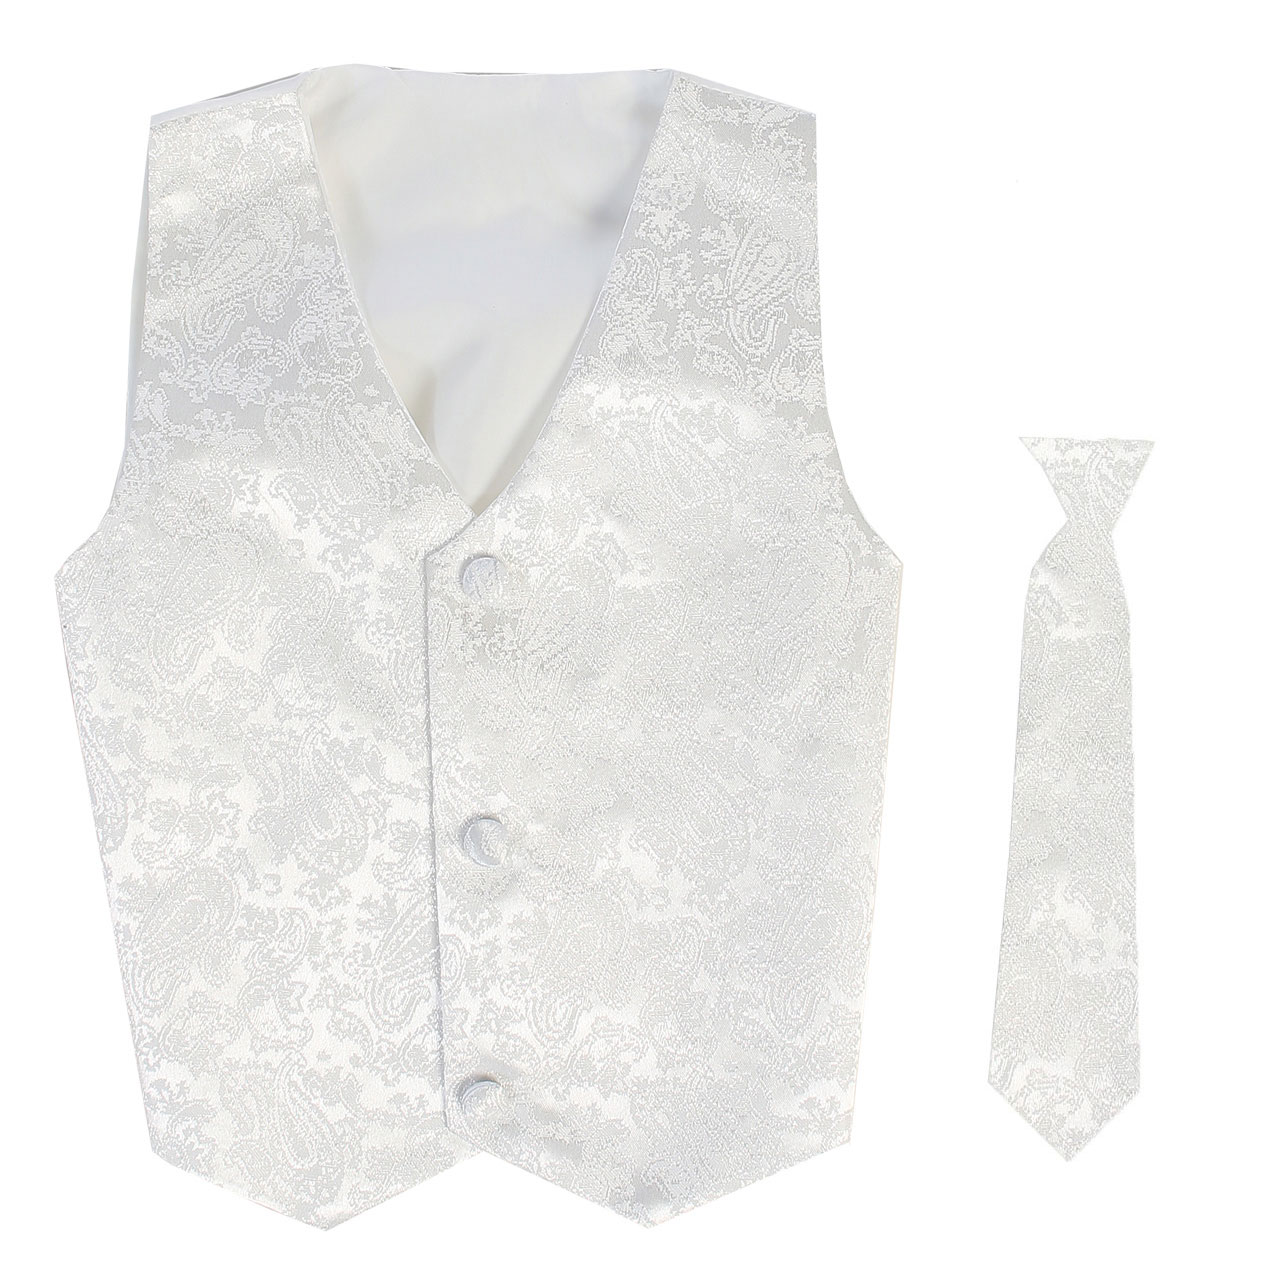 Vest and Clip On Boy Necktie set - White Paisley - 2T/3T